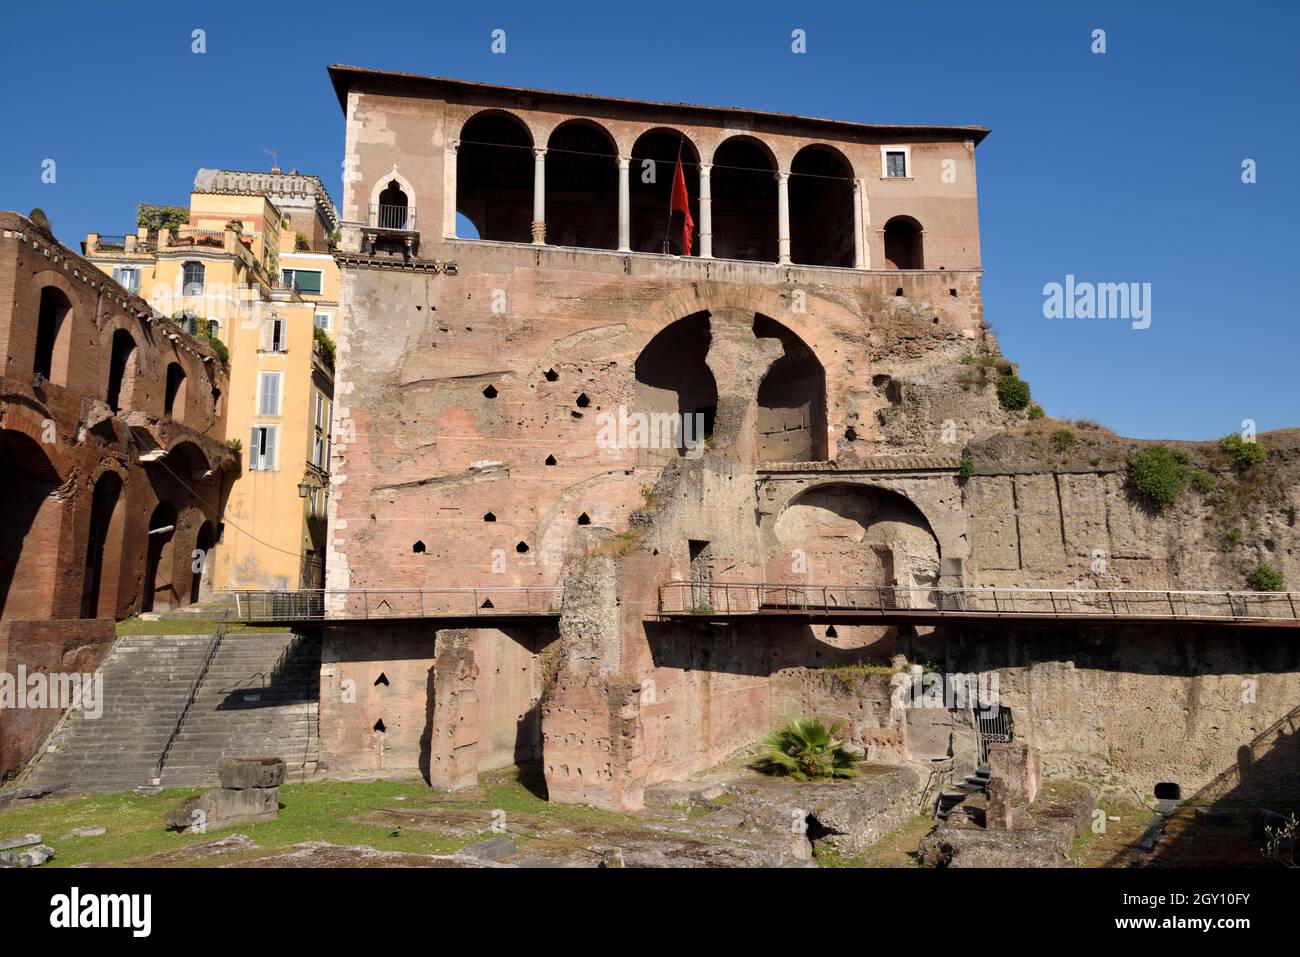 Italy, Rome, Casa dei Cavalieri di Rodi, house of the Knights of Rhodes Stock Photo